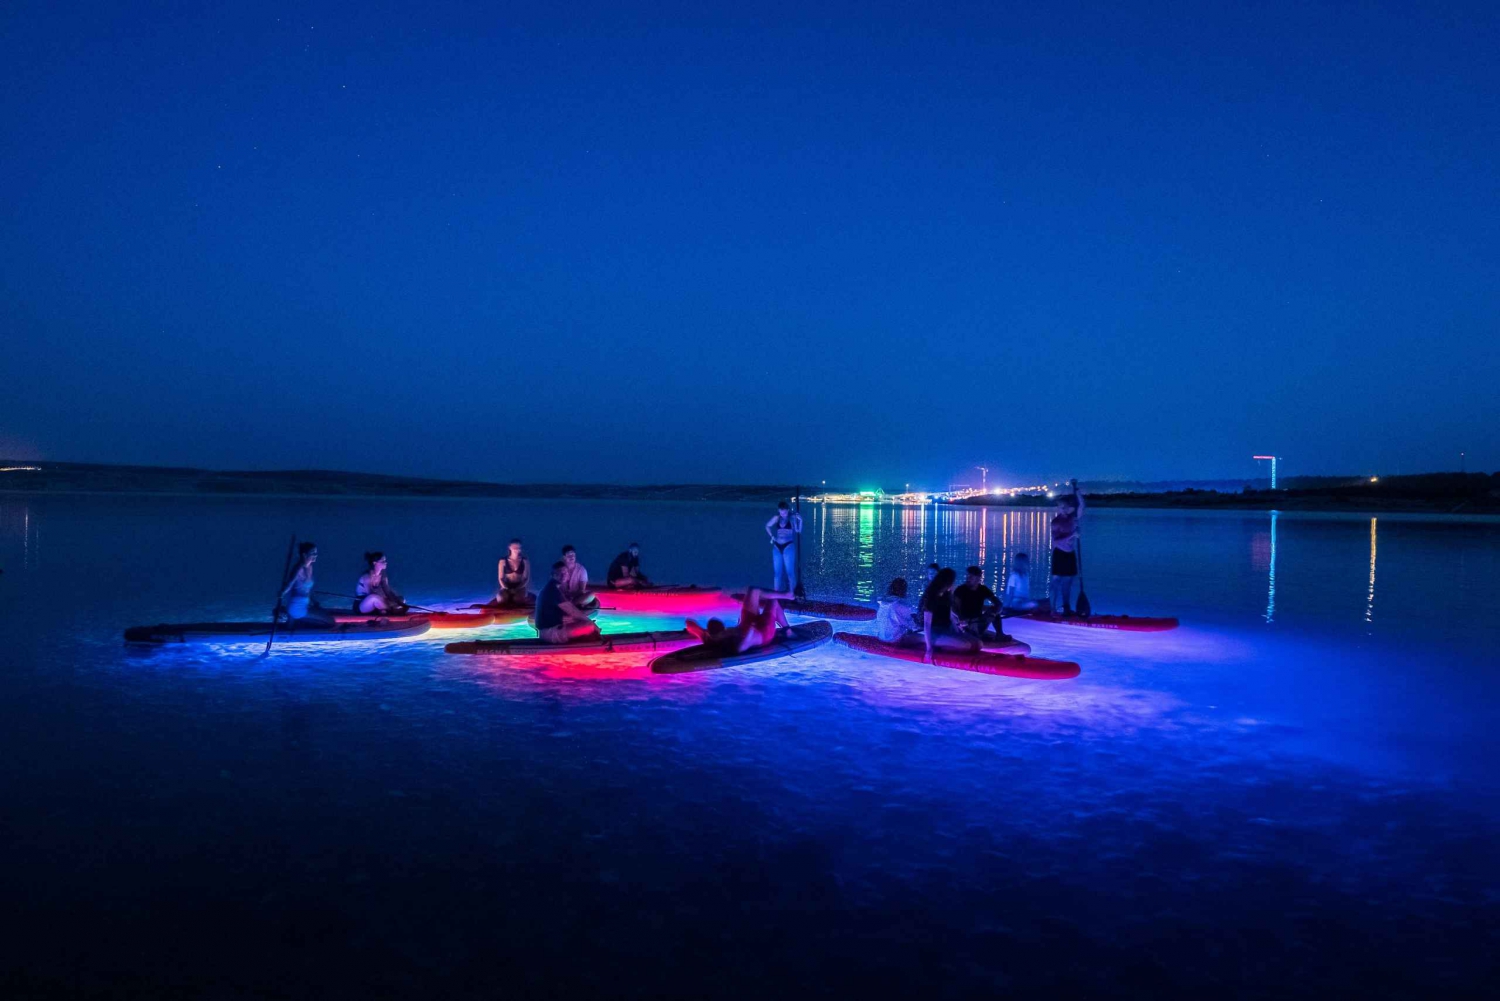 Novalja: Glowing Standup Paddleboard Guided Night Tour